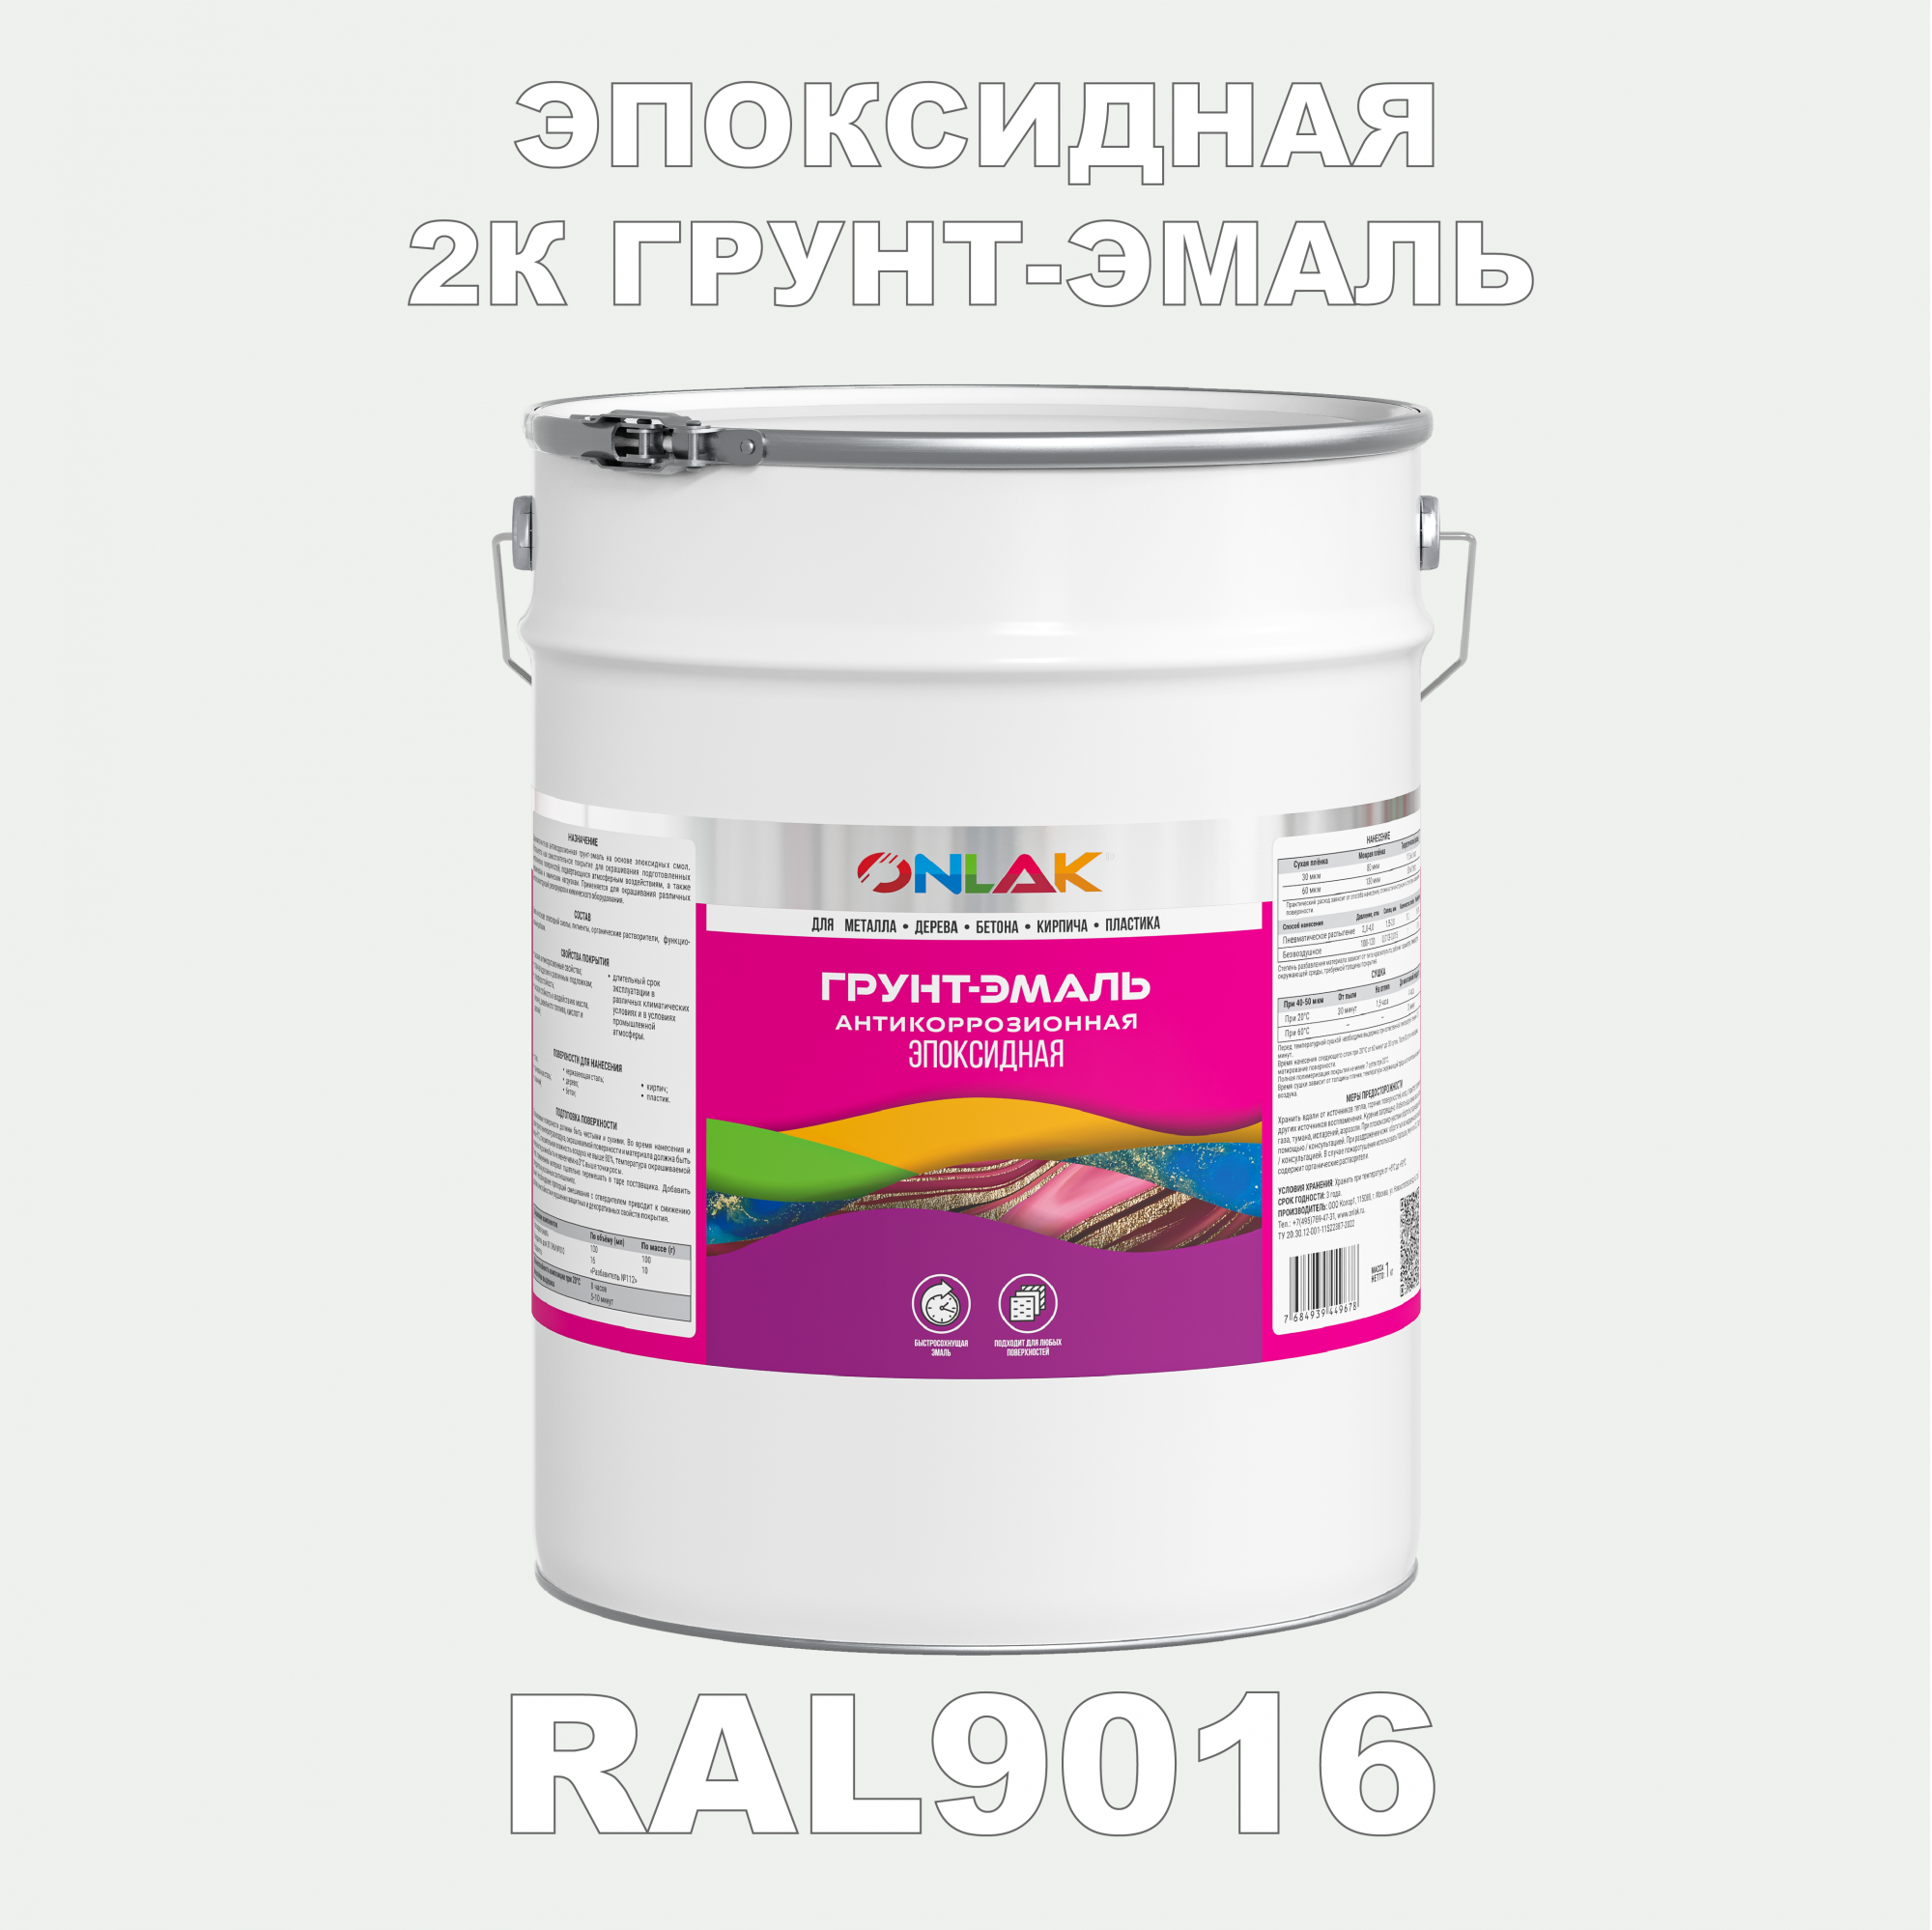 Грунт-эмаль ONLAK Эпоксидная 2К RAL9016 по металлу, ржавчине, дереву, бетону